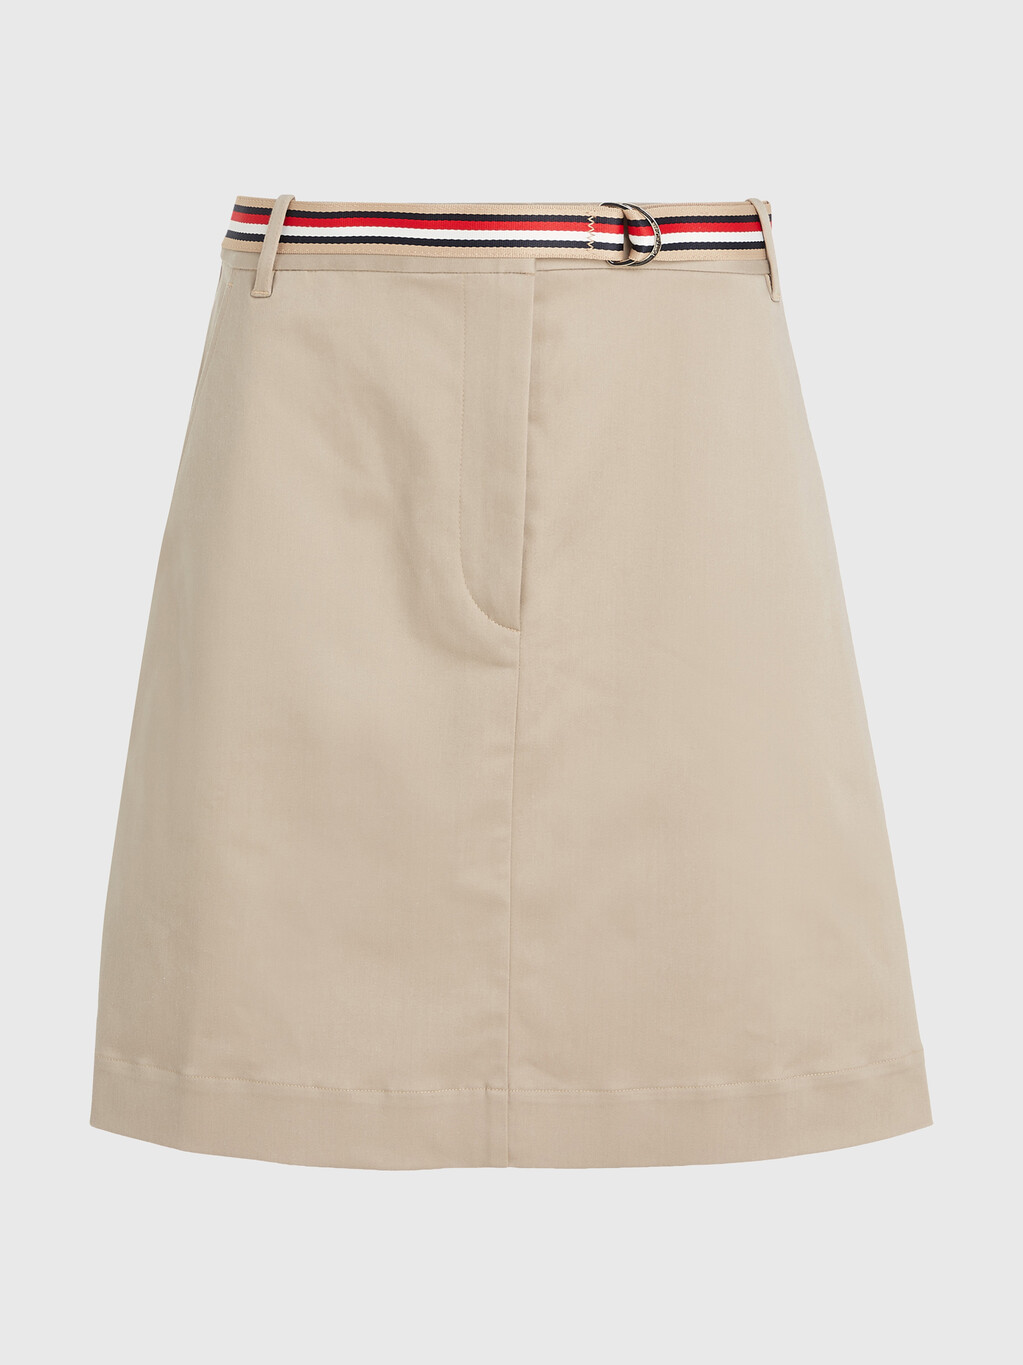 London Belted Short Skirt, Beige, hi-res